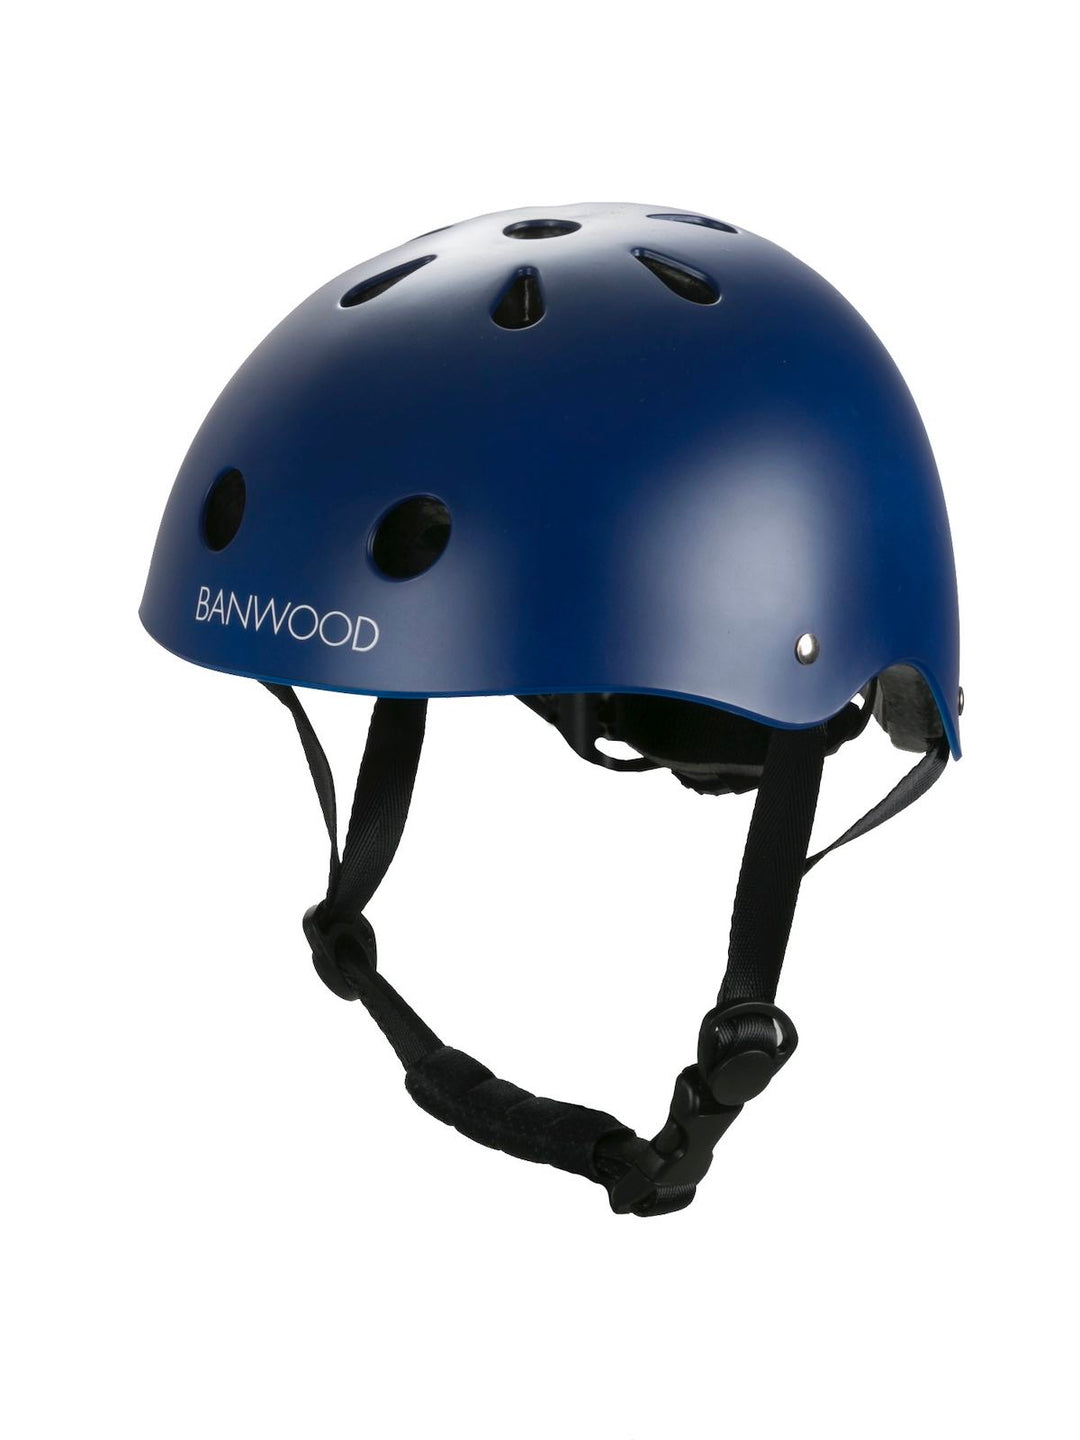 Banwood Classic Helmet in Navy